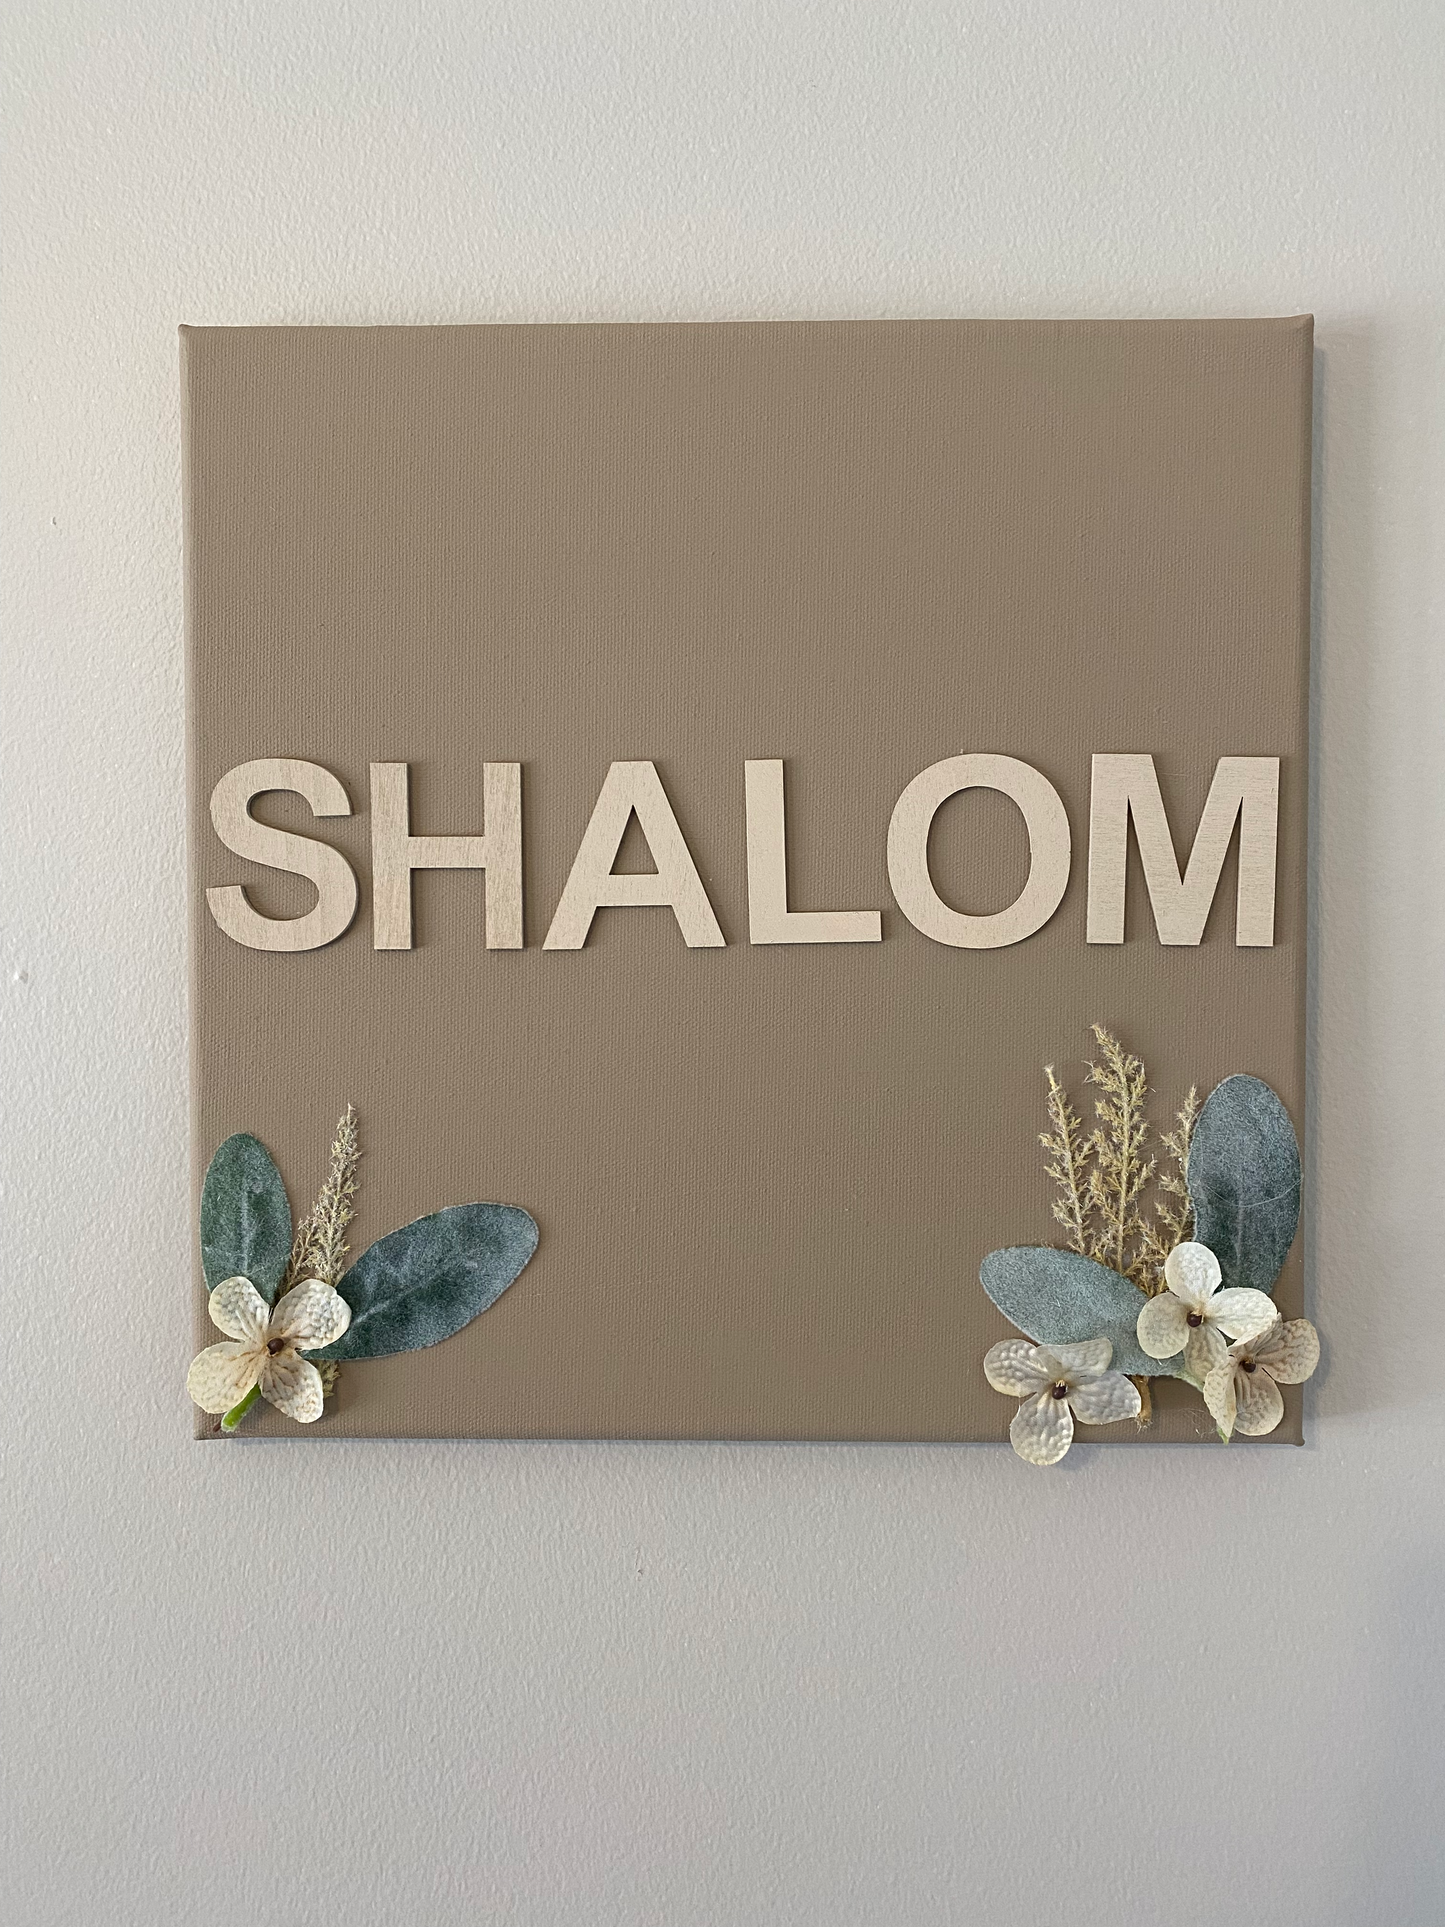 Shalom Painting